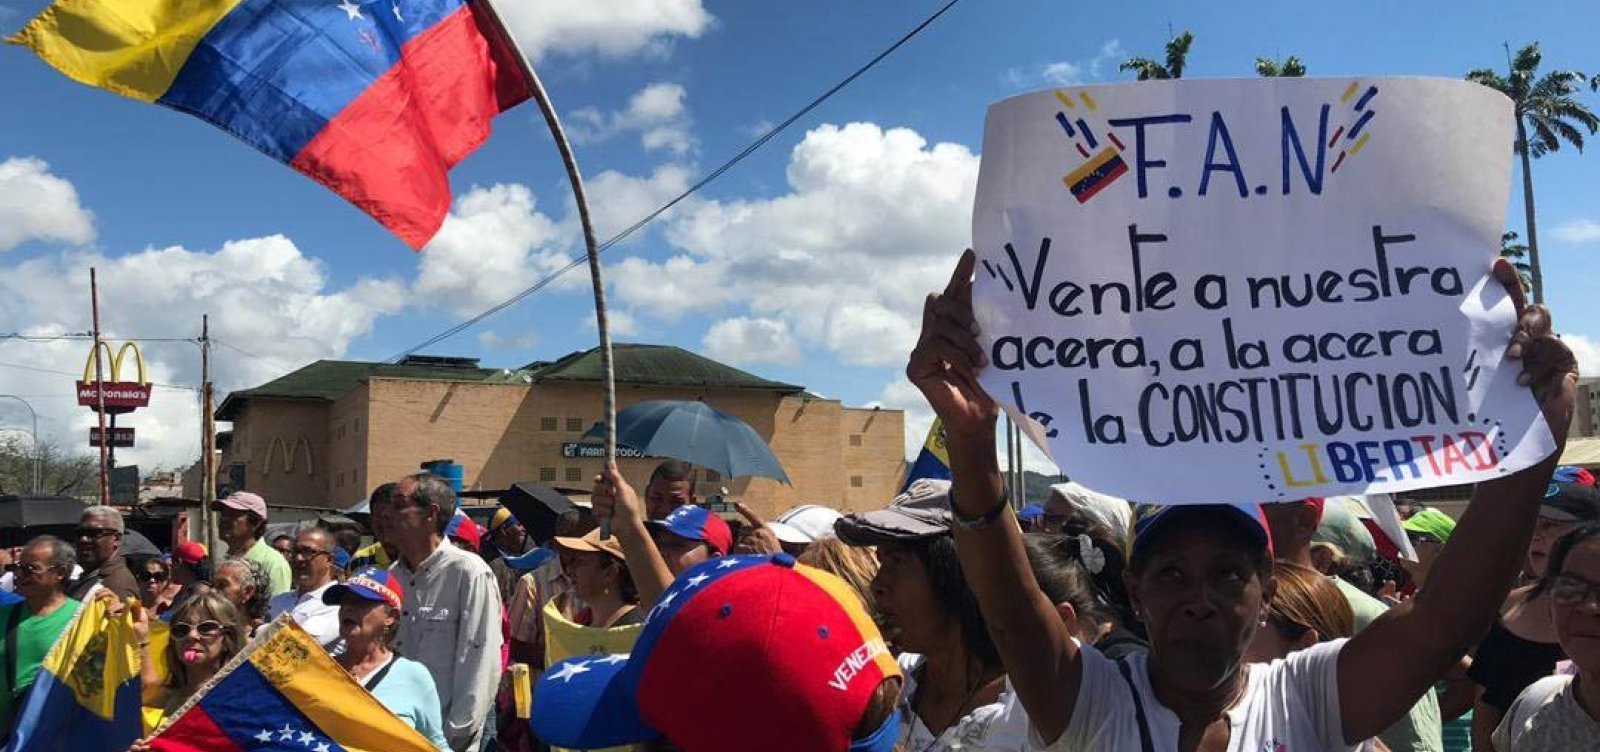 Uma barreira na fronteira entre Colômbia e Venezuela é removida, diz embaixadora